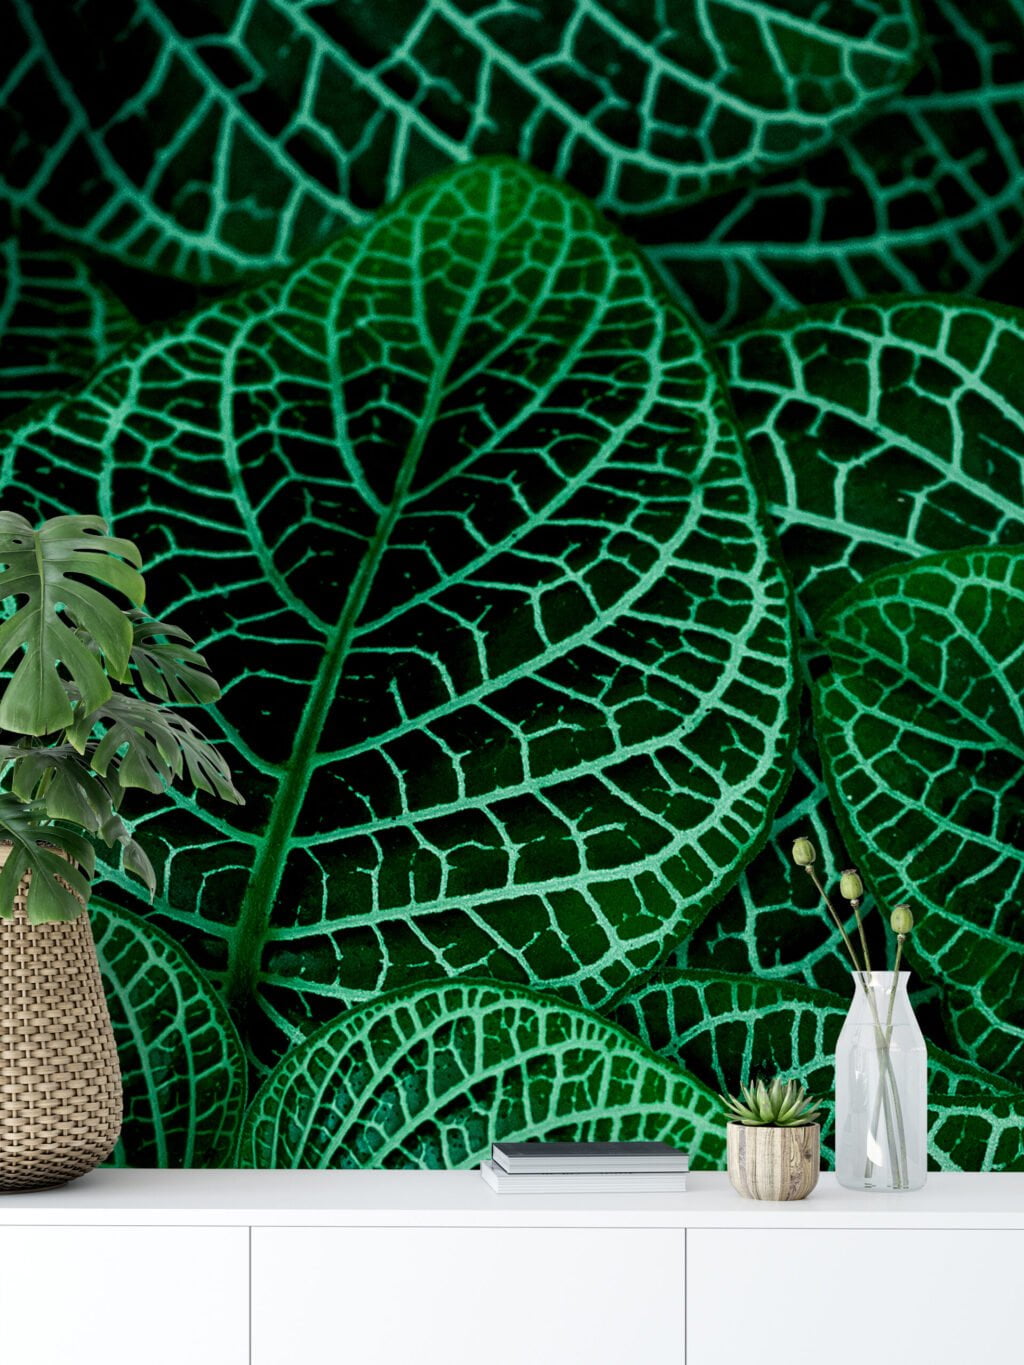 Koyu Yeşil Bitkiler Duvar Kağıdı, Botanik Yaprak Desenli Duvar Kağıdı Yaprak Desenli Duvar Kağıtları 6